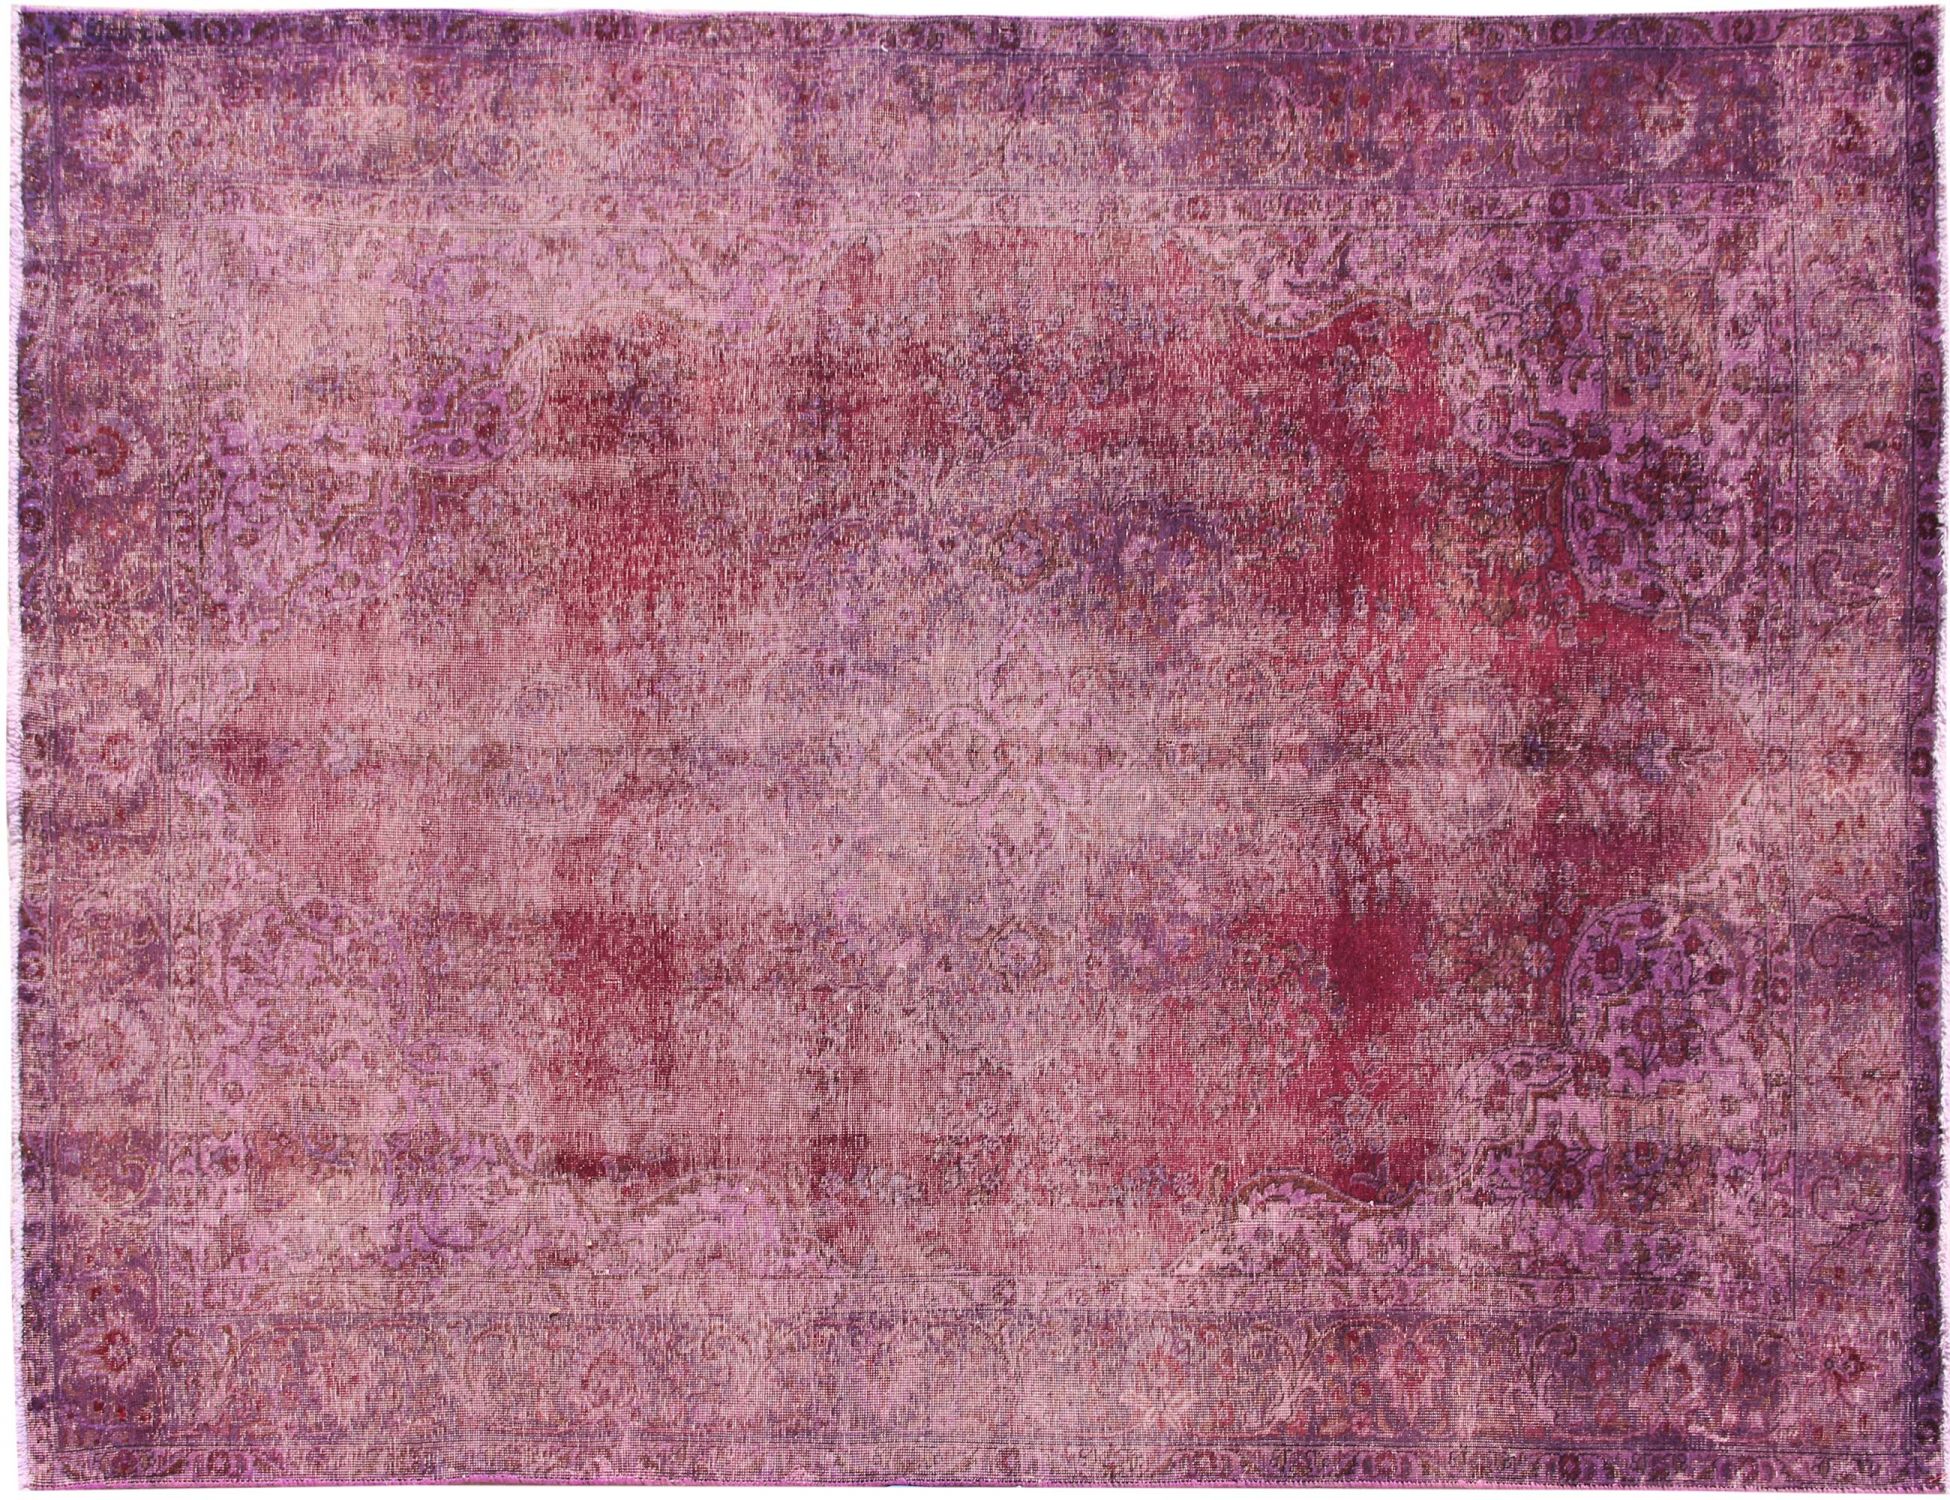 Persischer Vintage Teppich  lila <br/>320 x 200 cm